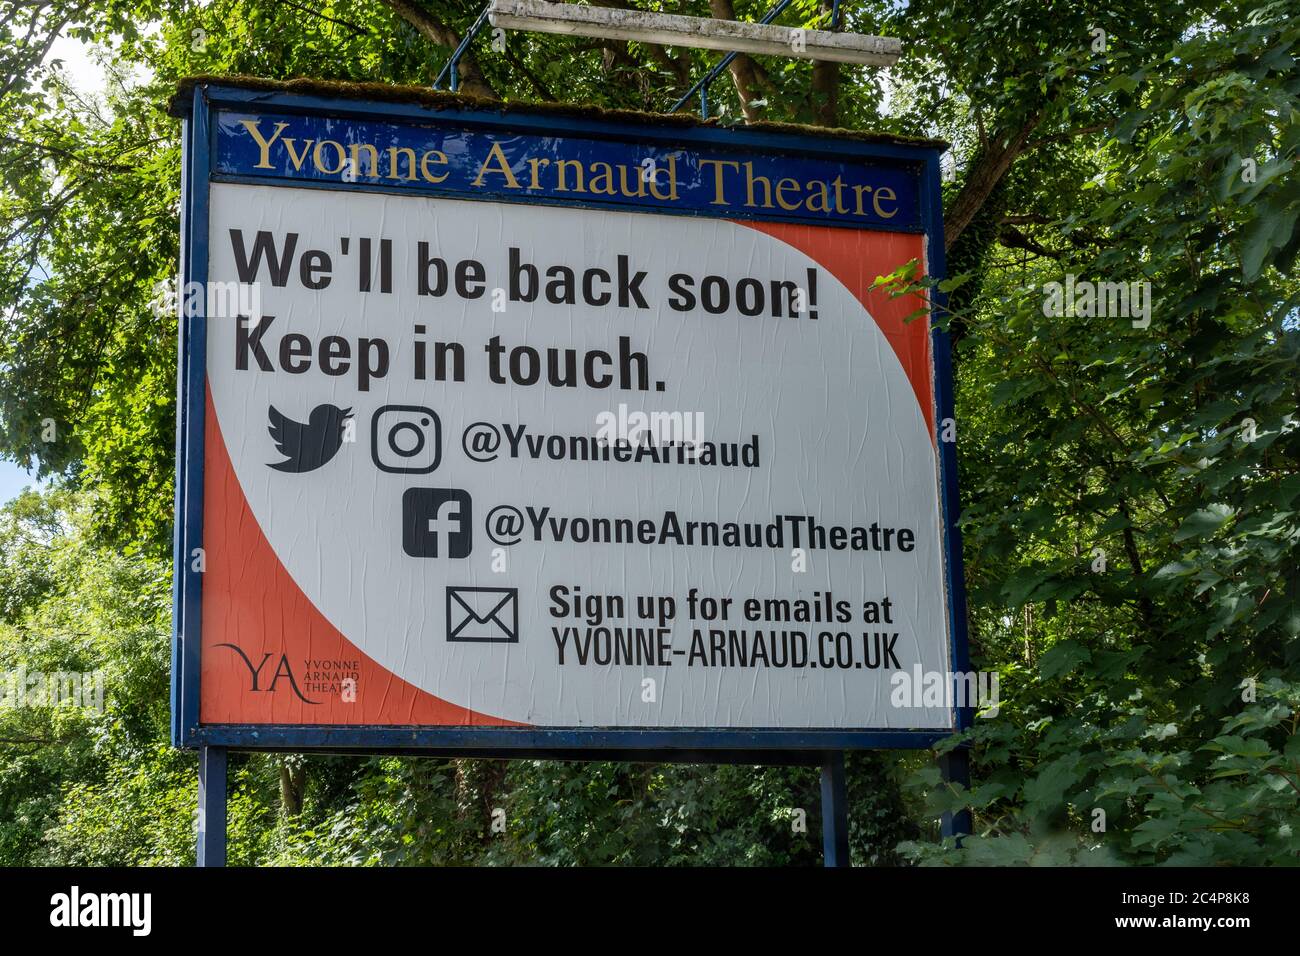 Il Teatro Yvonne Arnaud è chiuso durante la pandemia del Coronavirus covid-19 nel giugno 2020. Firma dicendo che torneremo presto. Foto Stock